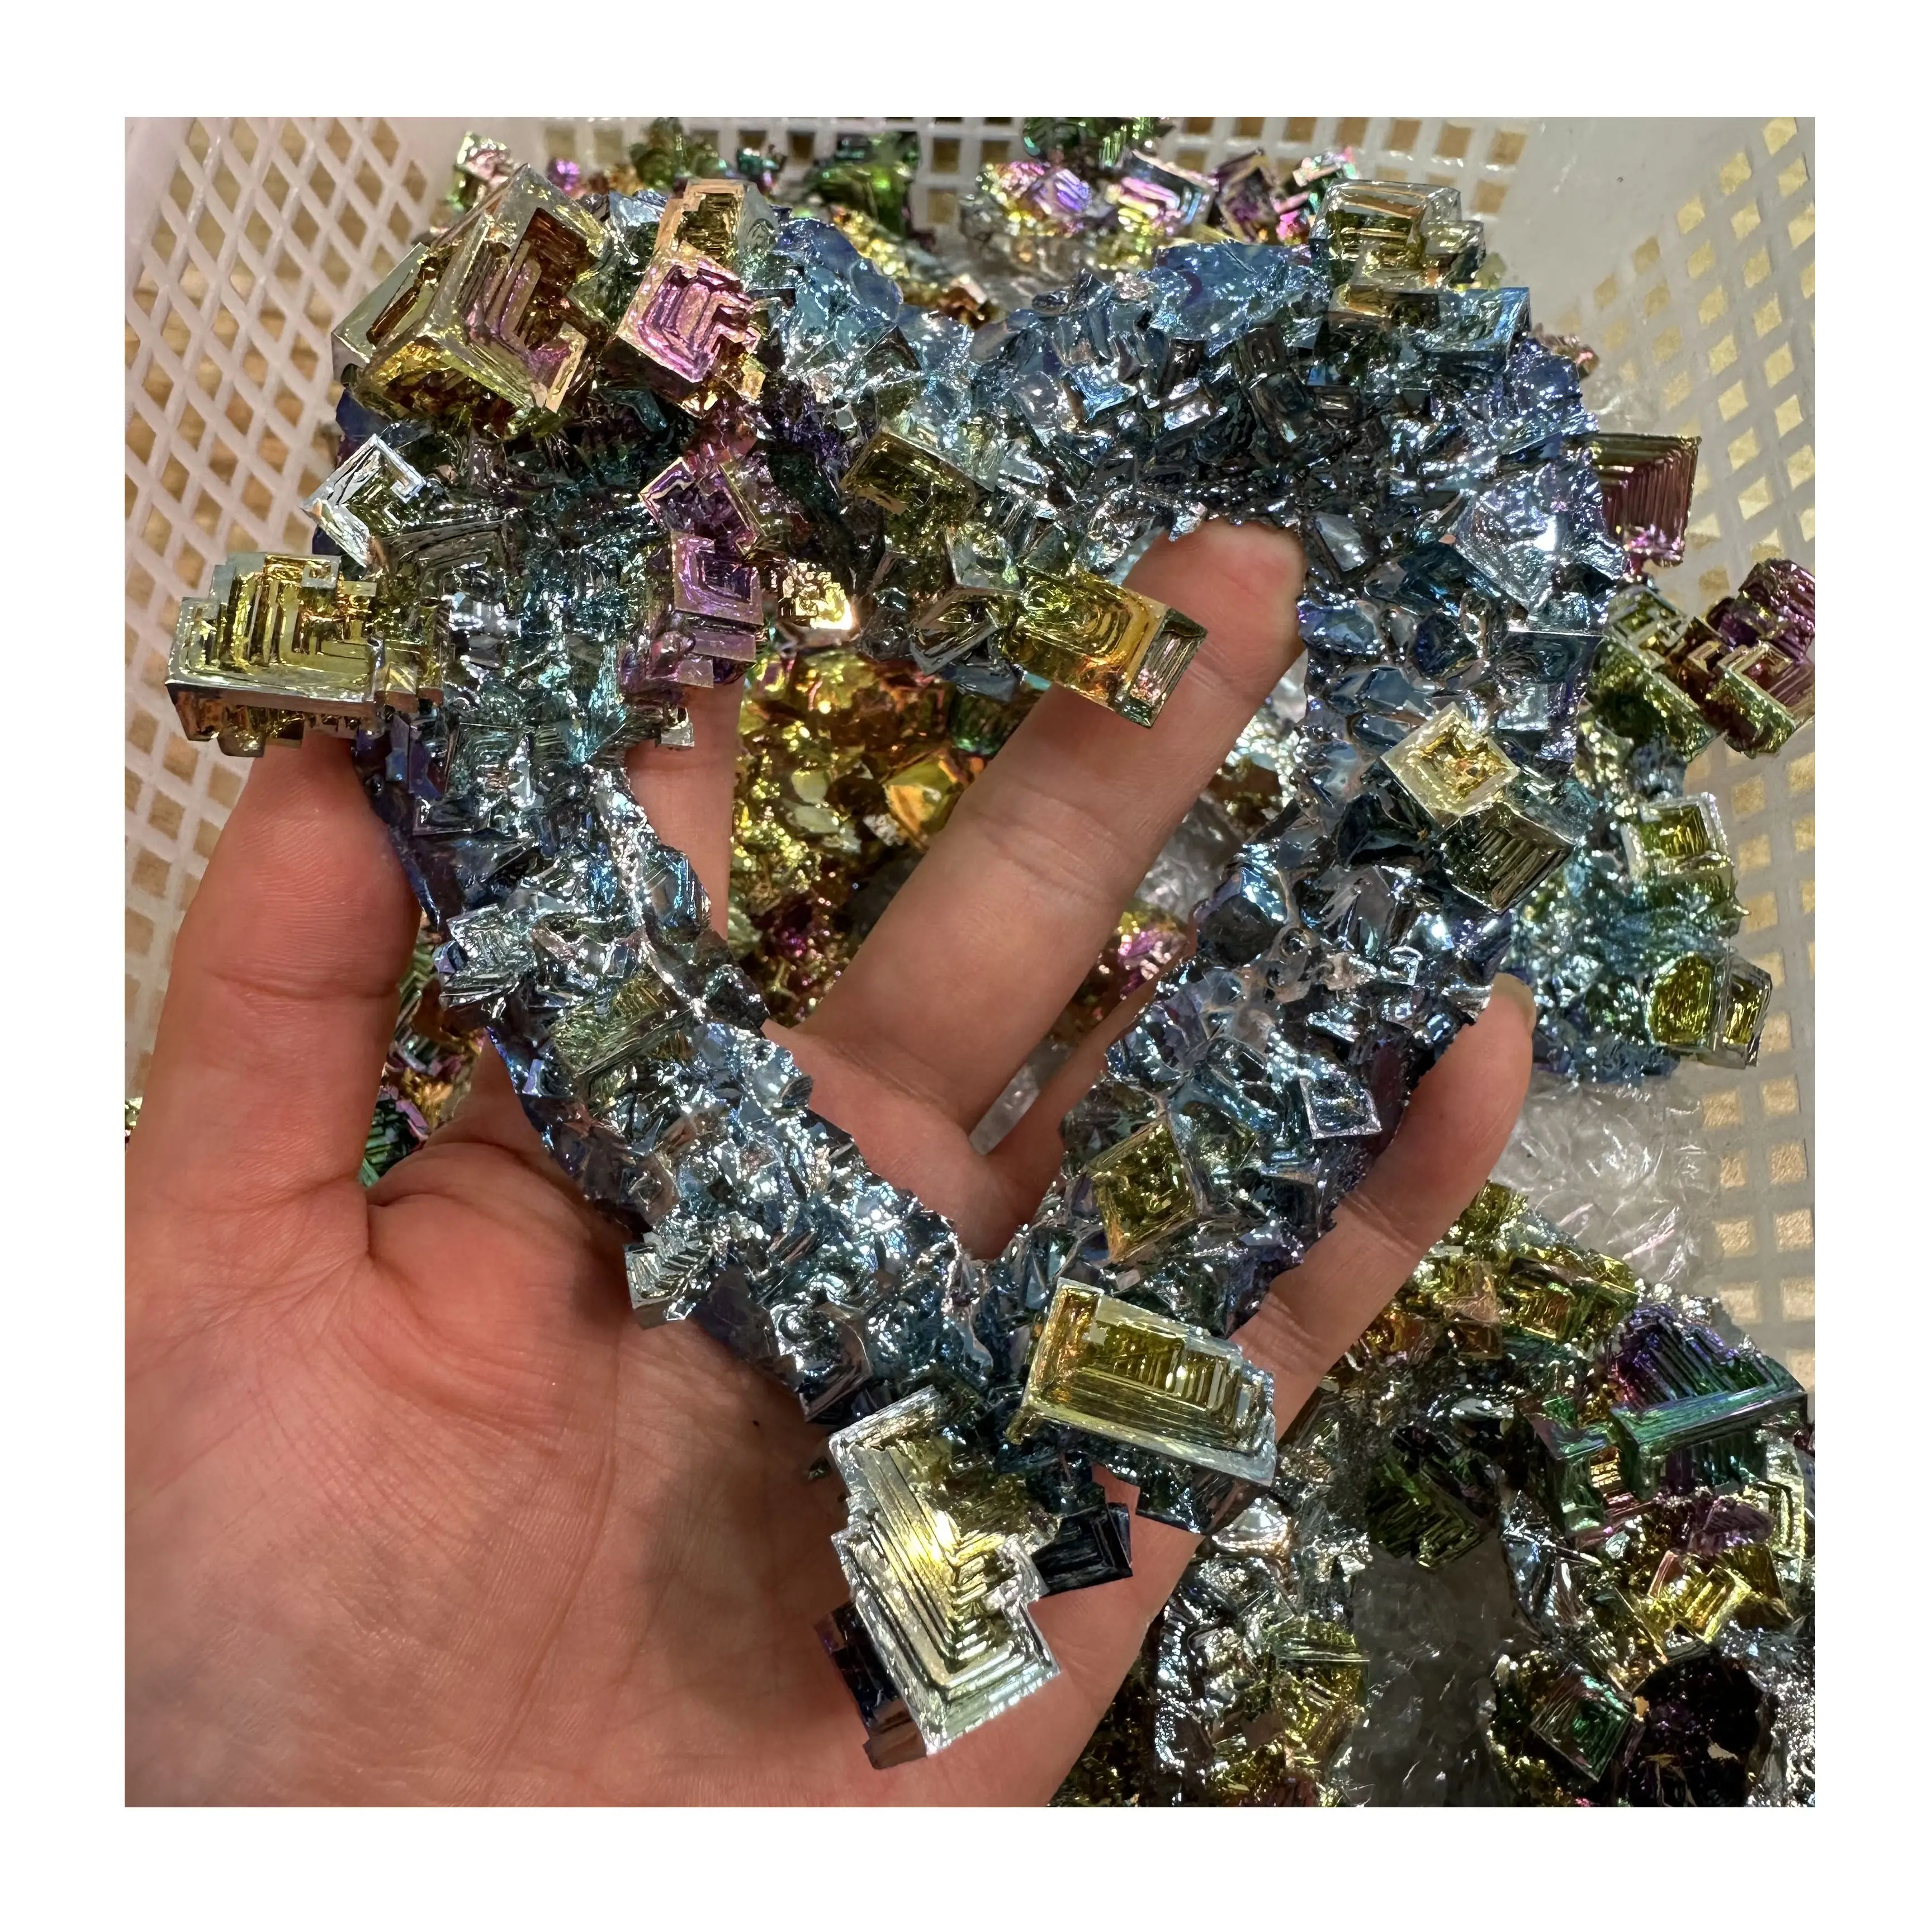 Commercio all'ingrosso naturale di metallo minerale bismuto a forma di cuore energia curativa minatore di cristallo intaglio stile Feng Shui per la decorazione della casa